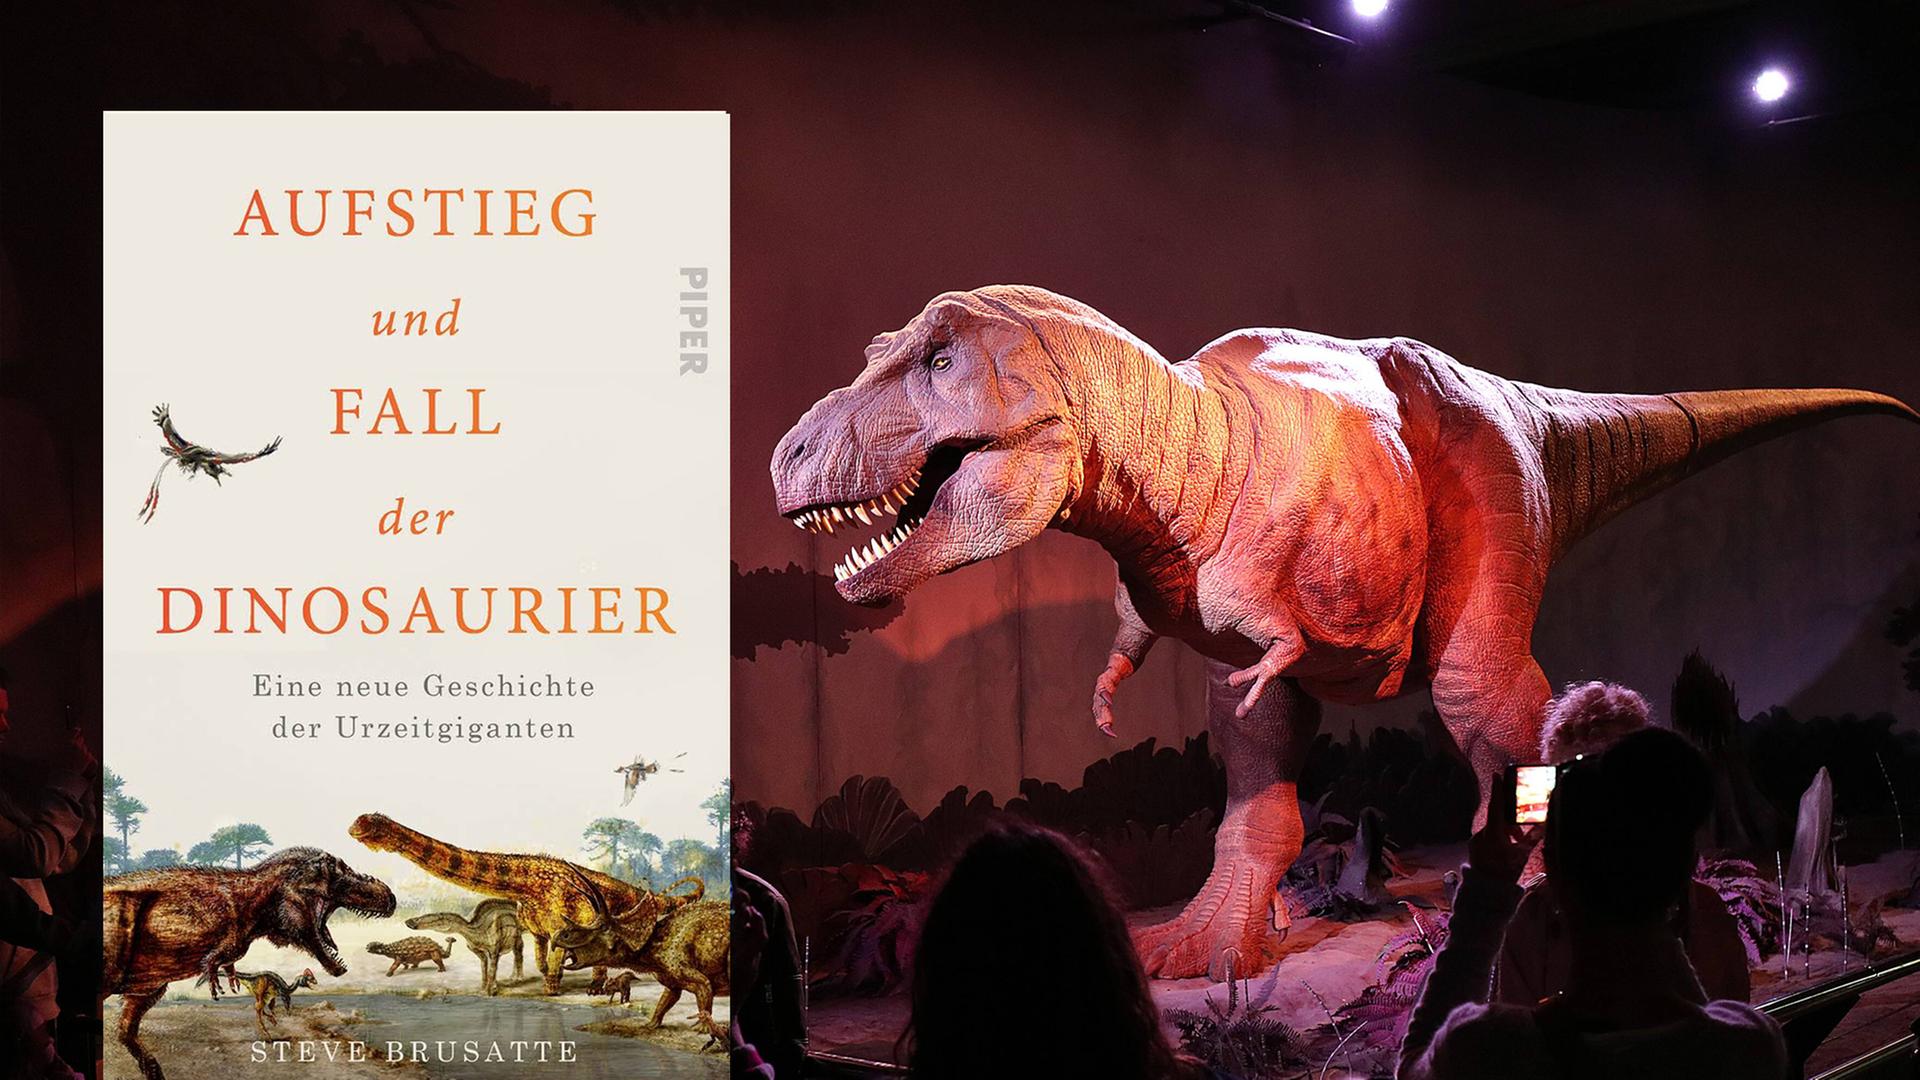 Cover von Steve Brusattes Buch "Aufstieg und Fall der Dinosaurier". Im Hintergrund ist ein Foto zu sehen, das zeigt wie Besucher einen Tyrannosaurus im "Natural History Museum" in London betrachten.